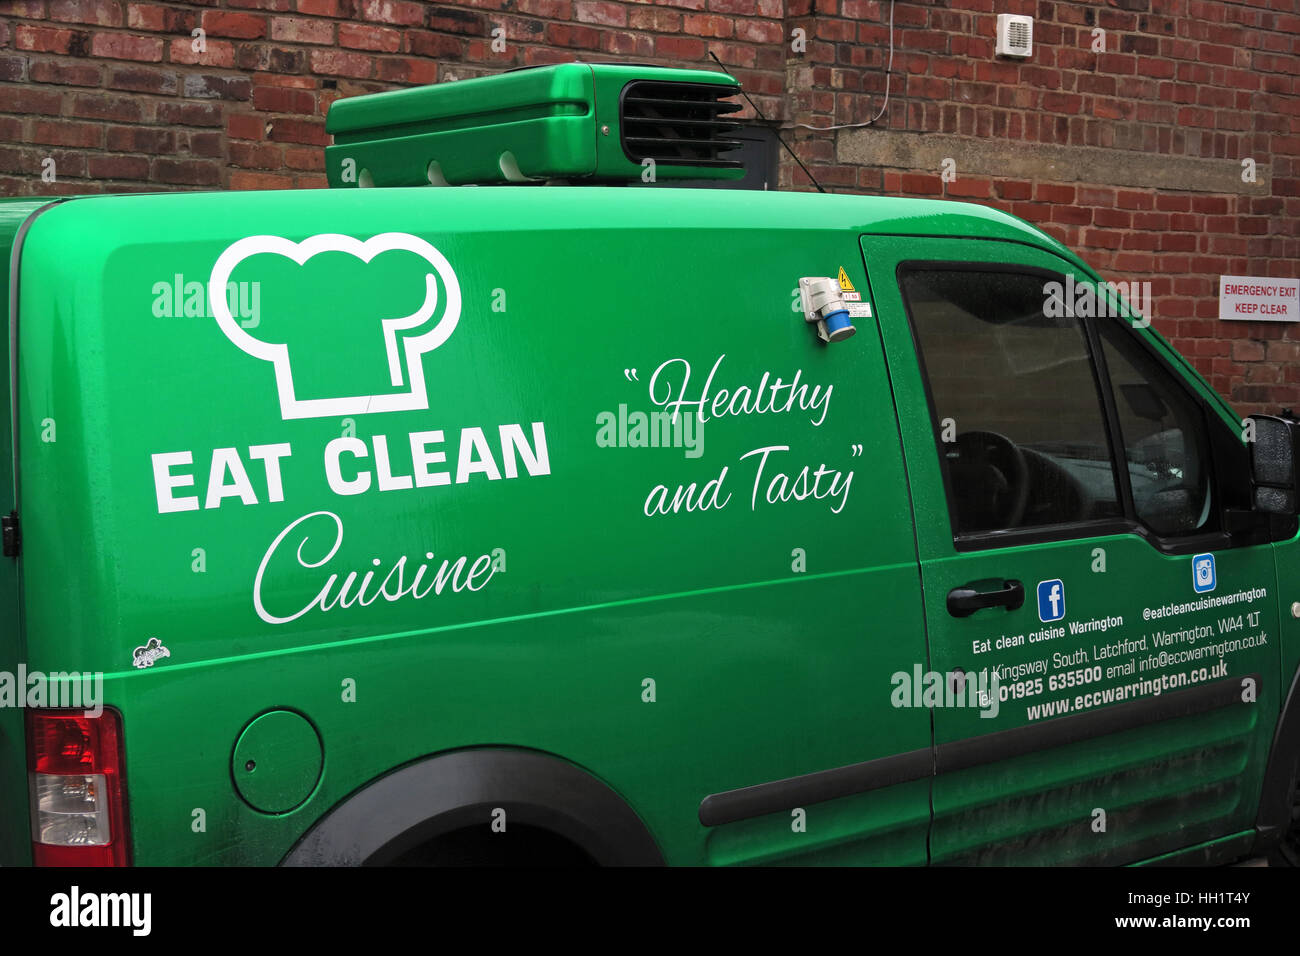 Manger engouement propre,Cafe,Warrington Cheshire, Angleterre, Royaume-Uni - manger une cuisine propre Latchford - Vert delivery van Banque D'Images